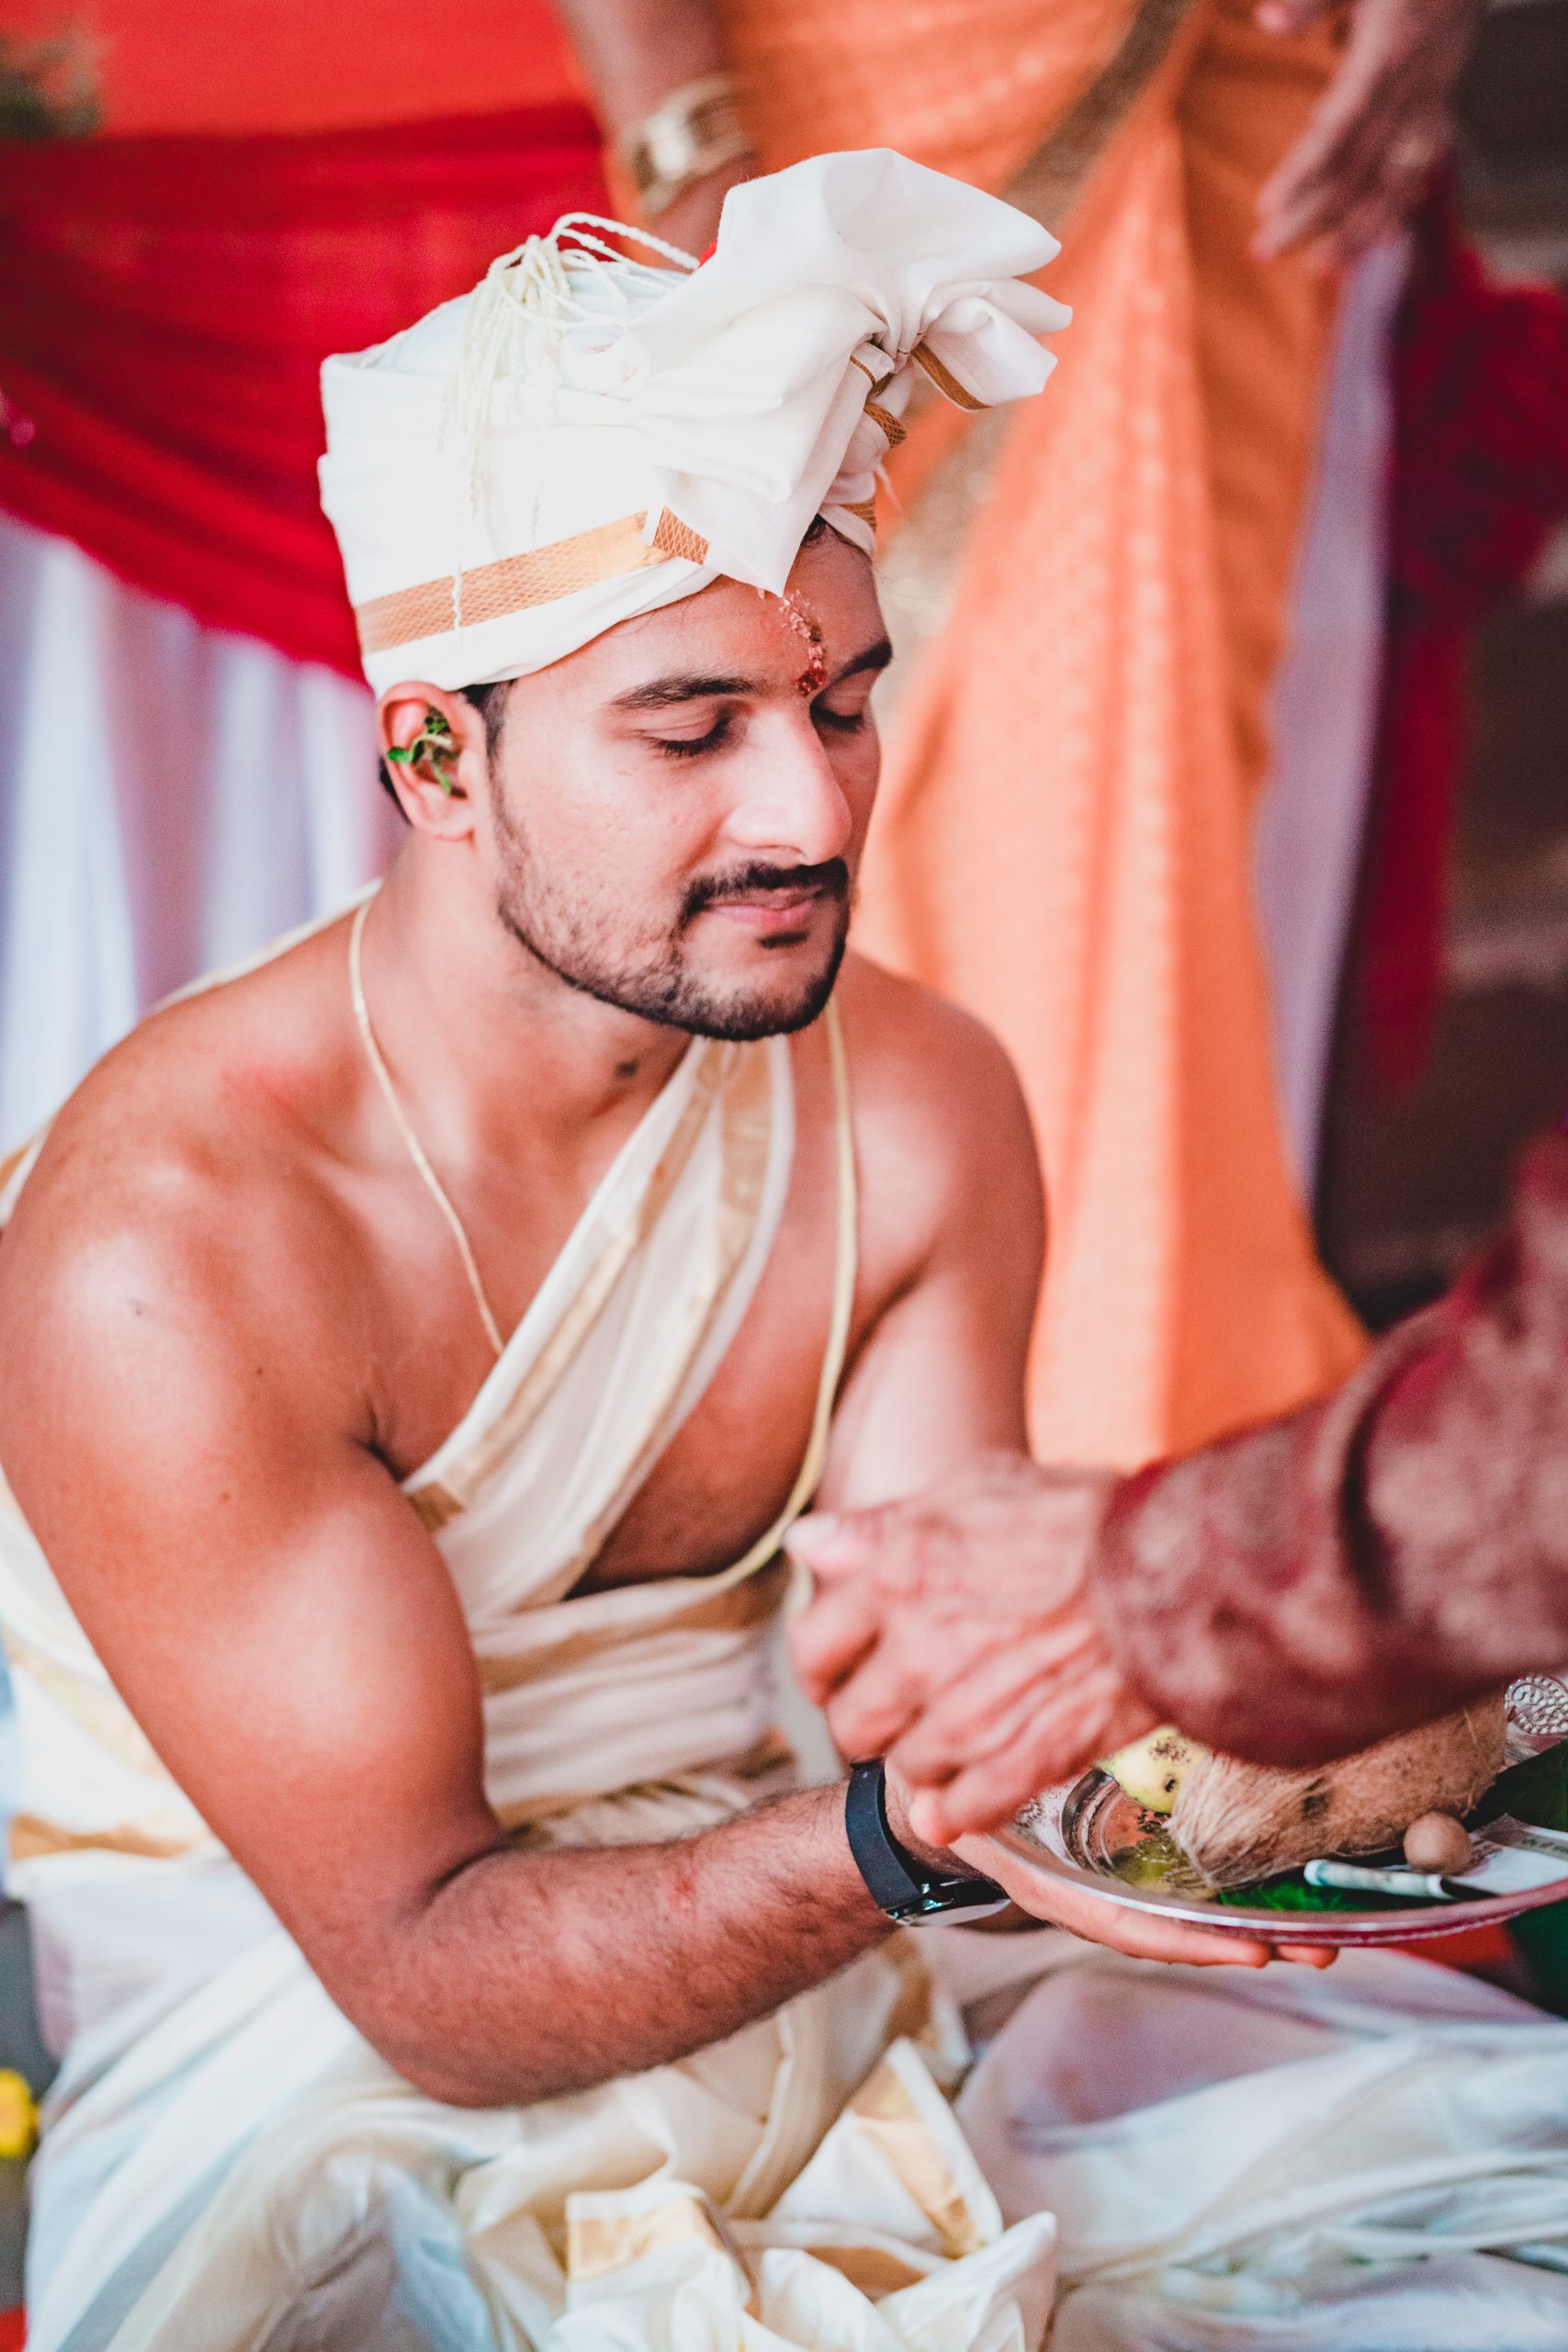 An Indian bridegroom